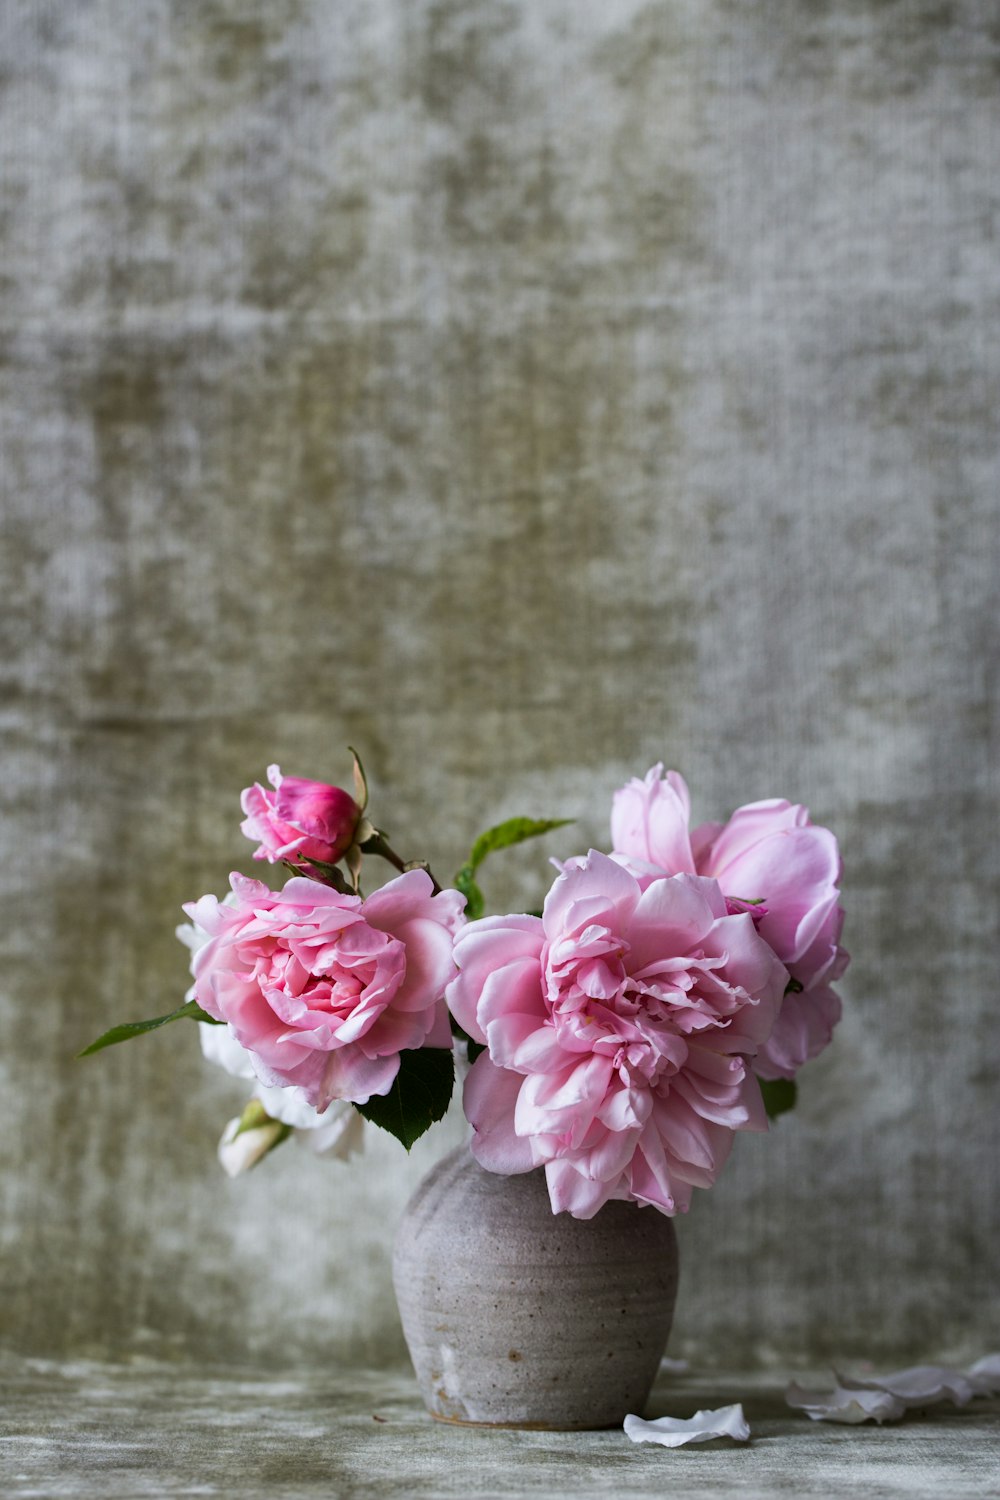 회색 세라믹 꽃병에 분홍색 꽃